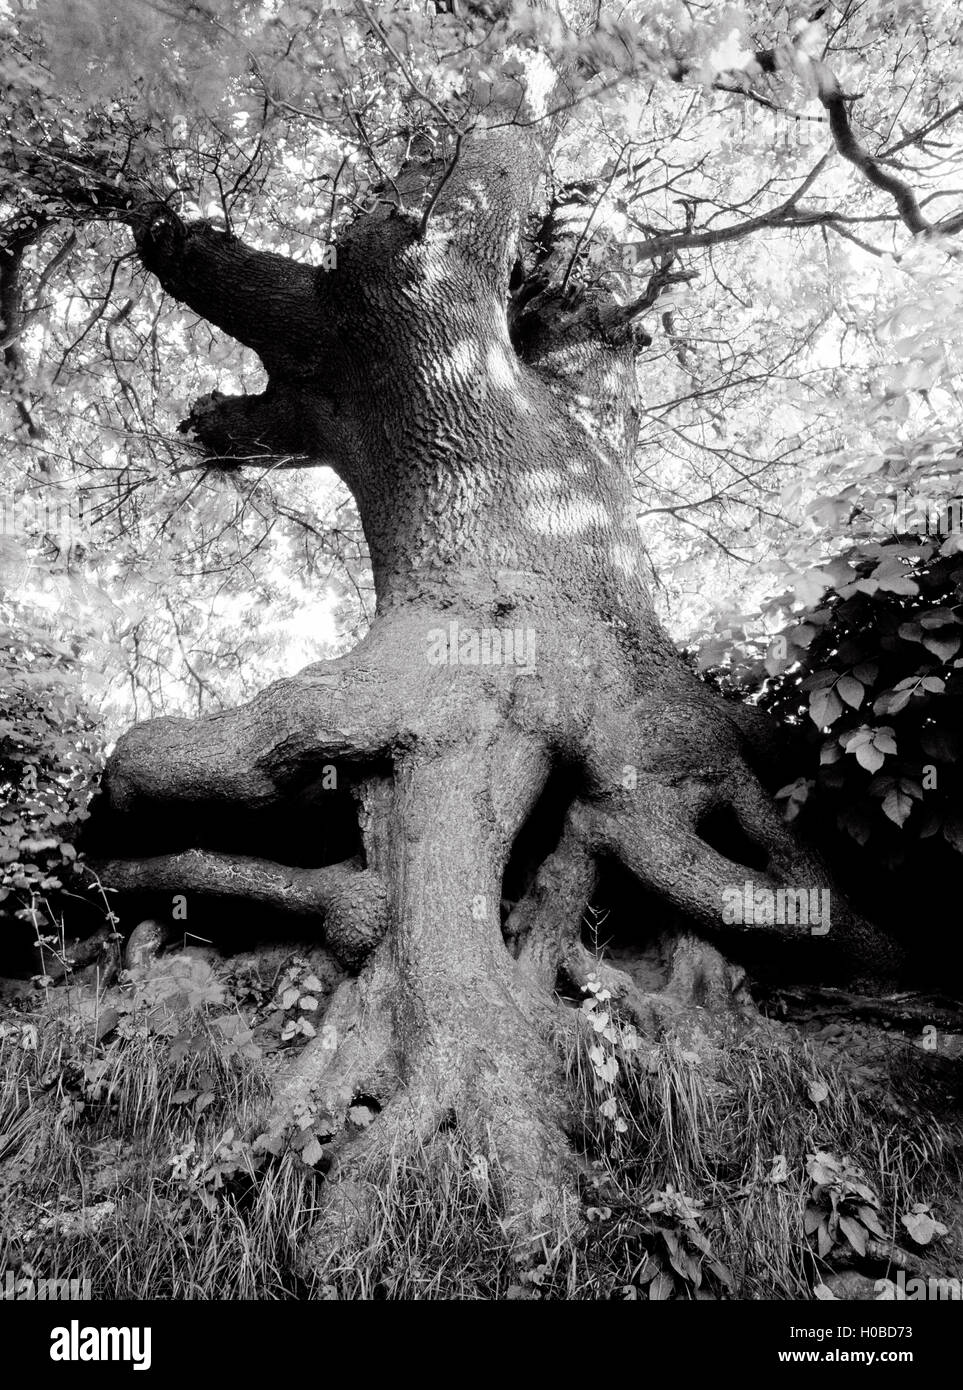 Esaminando i rami di un albero di quercia che cresce in banca di un sunken road. Le radici sono state esposte da erosione, Denbighshire, Galles del Nord, Regno Unito Foto Stock